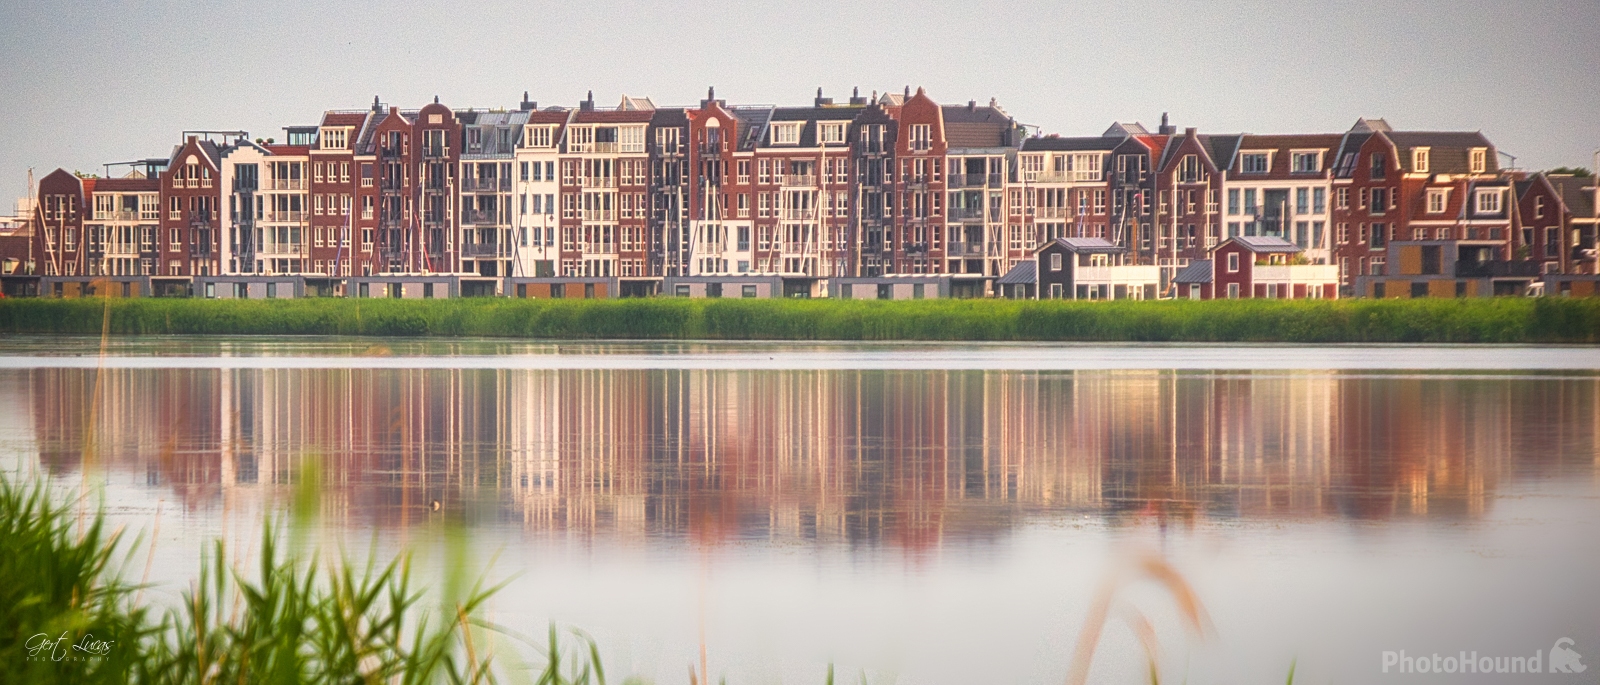 Image of Spakenburg from Eemmeerdijk by Gert Lucas